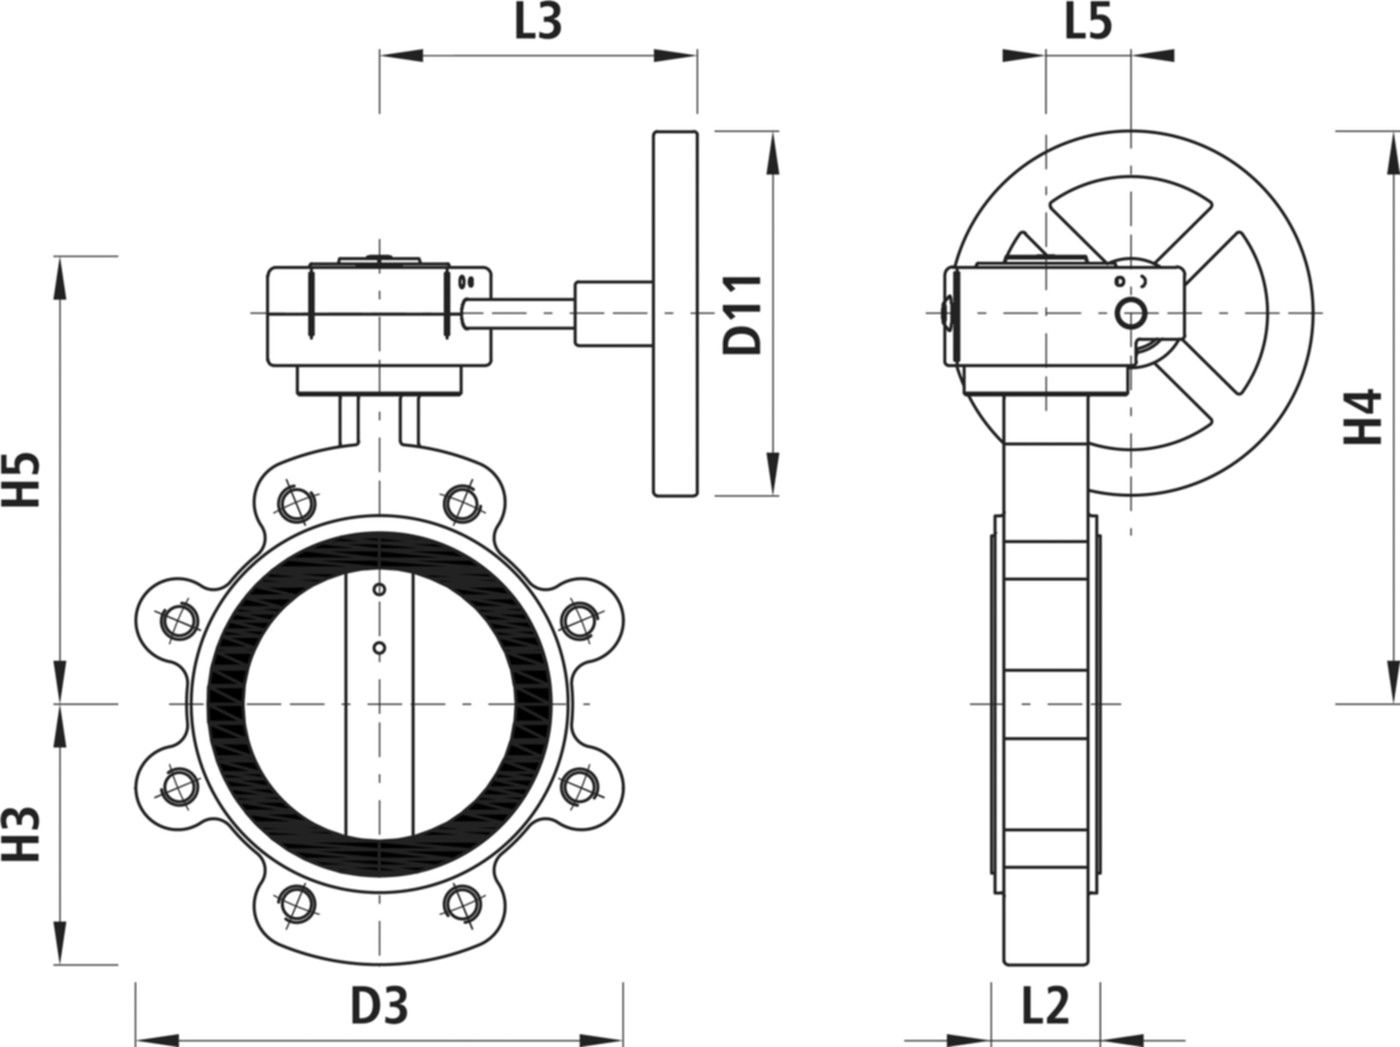 Absperrklappe mit Getriebe Typ LT 9937 für Gas DN 150 PN 16 - Hawle Absperrklappen